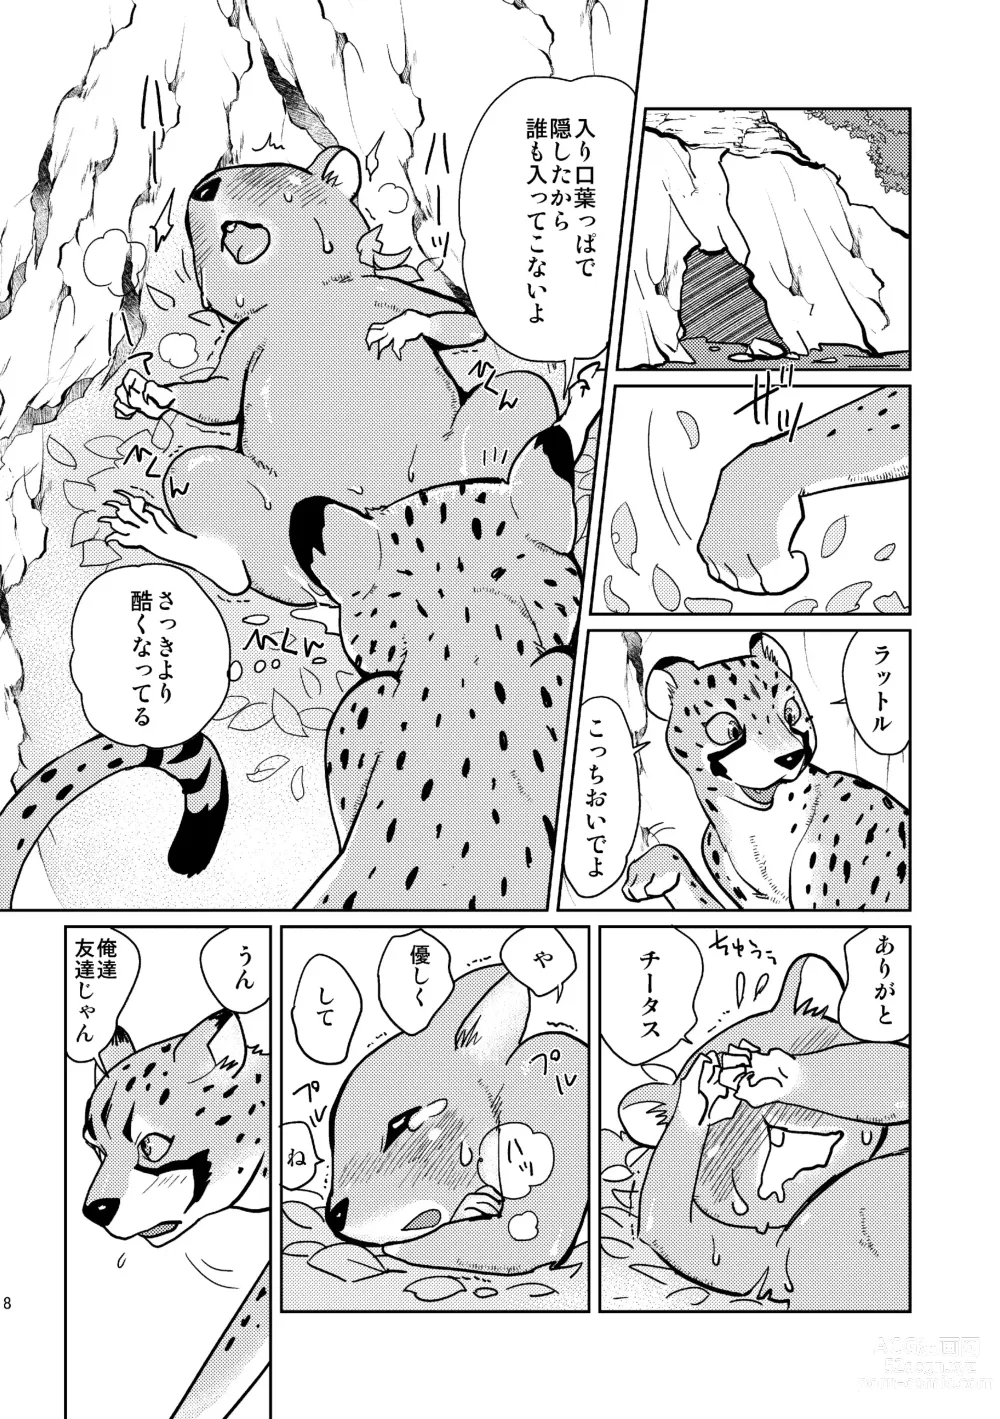 Page 8 of doujinshi Beast Mode!